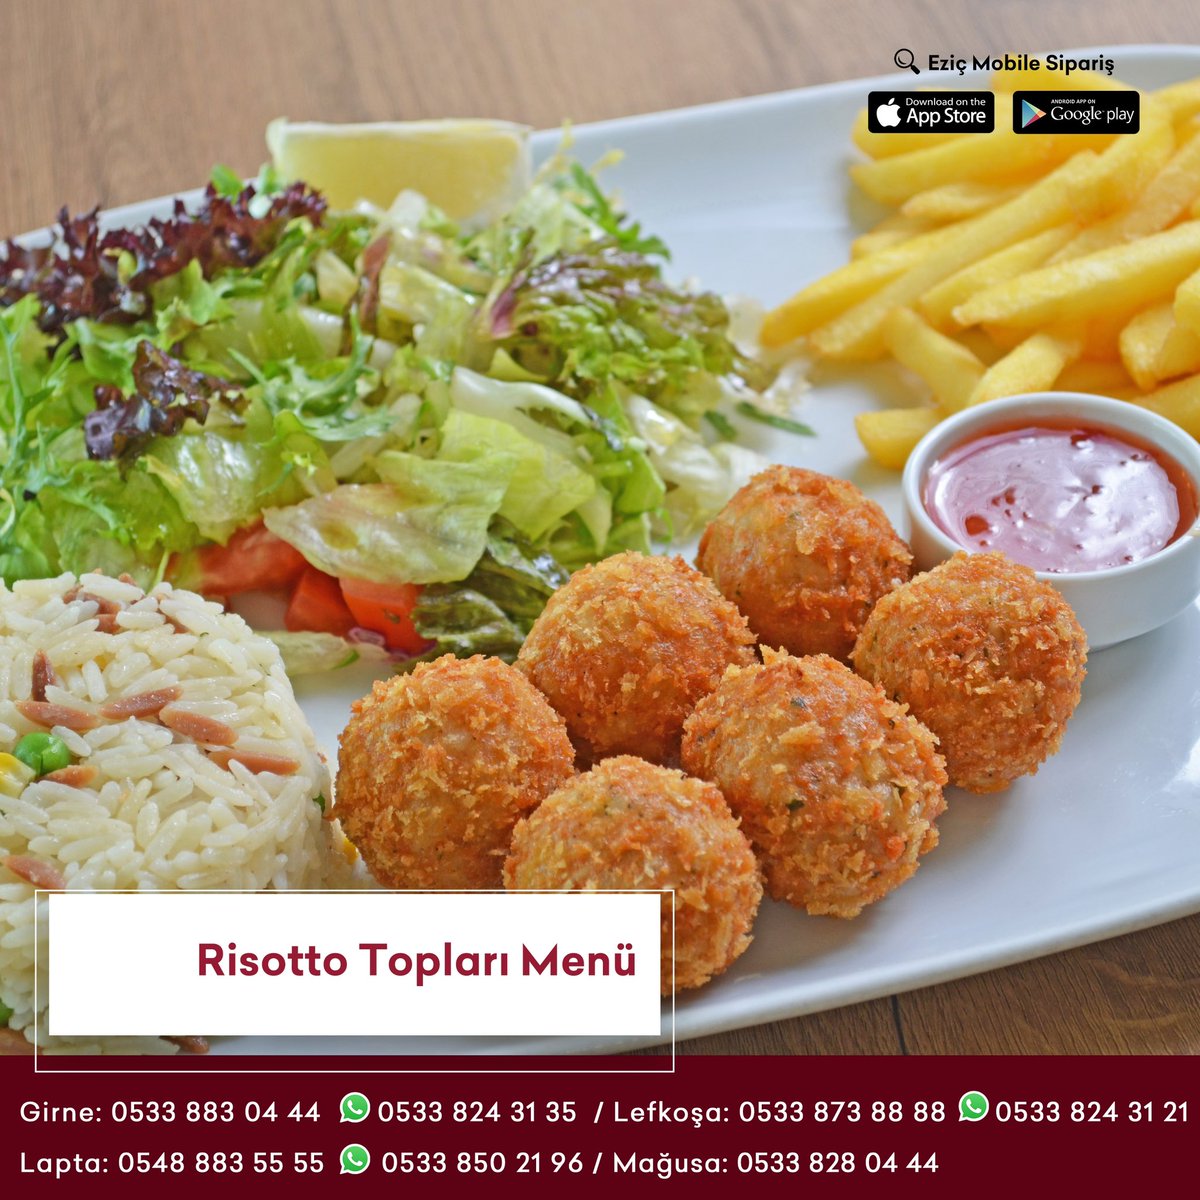 Pirinç ve özel baharatlarla harmanlanmış tavuk topları 😍 #risottoballs #food #foodlover #eziçrestaurant